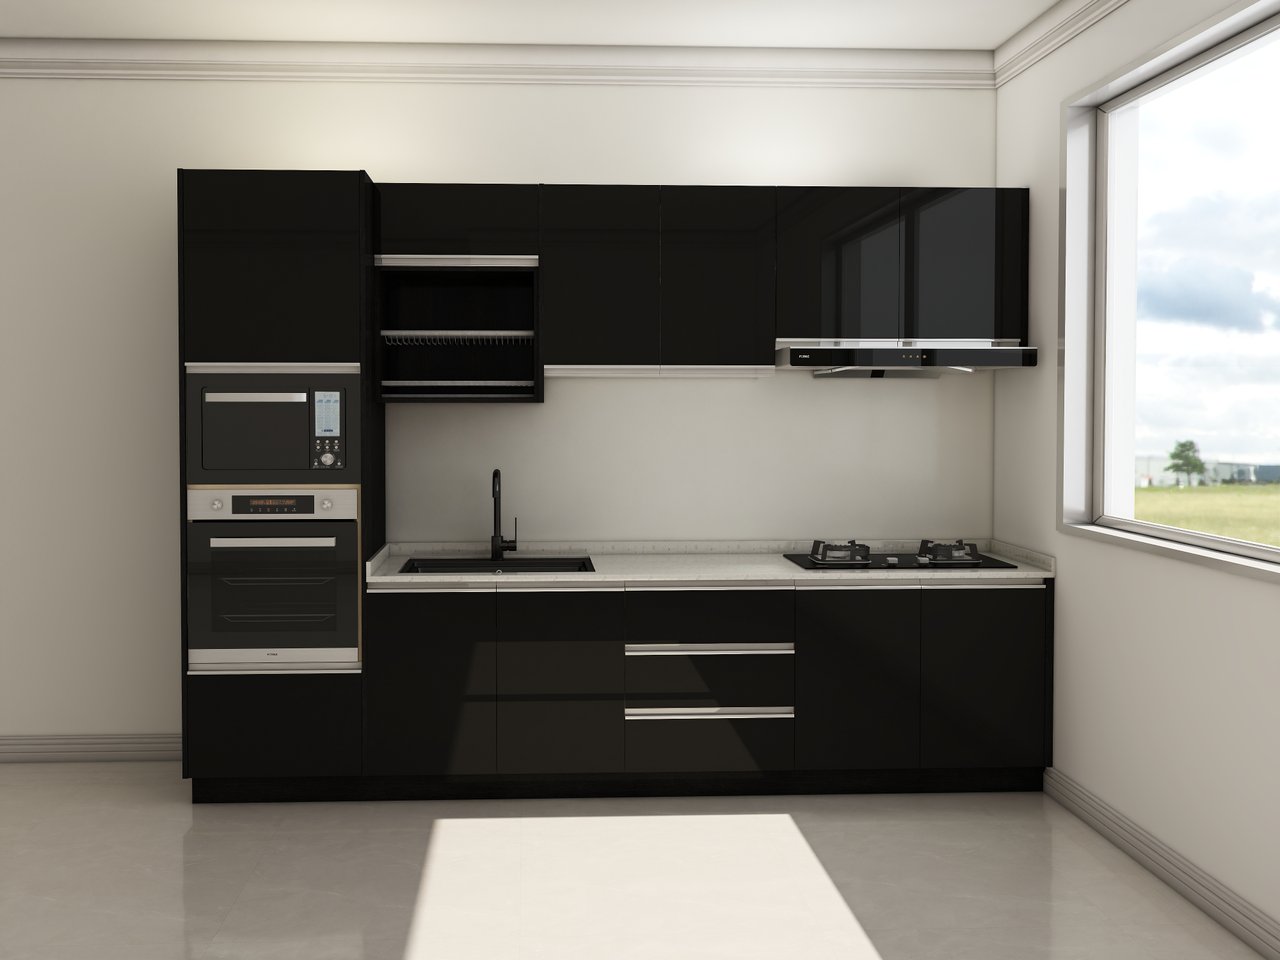 3g kitchen cabinet design